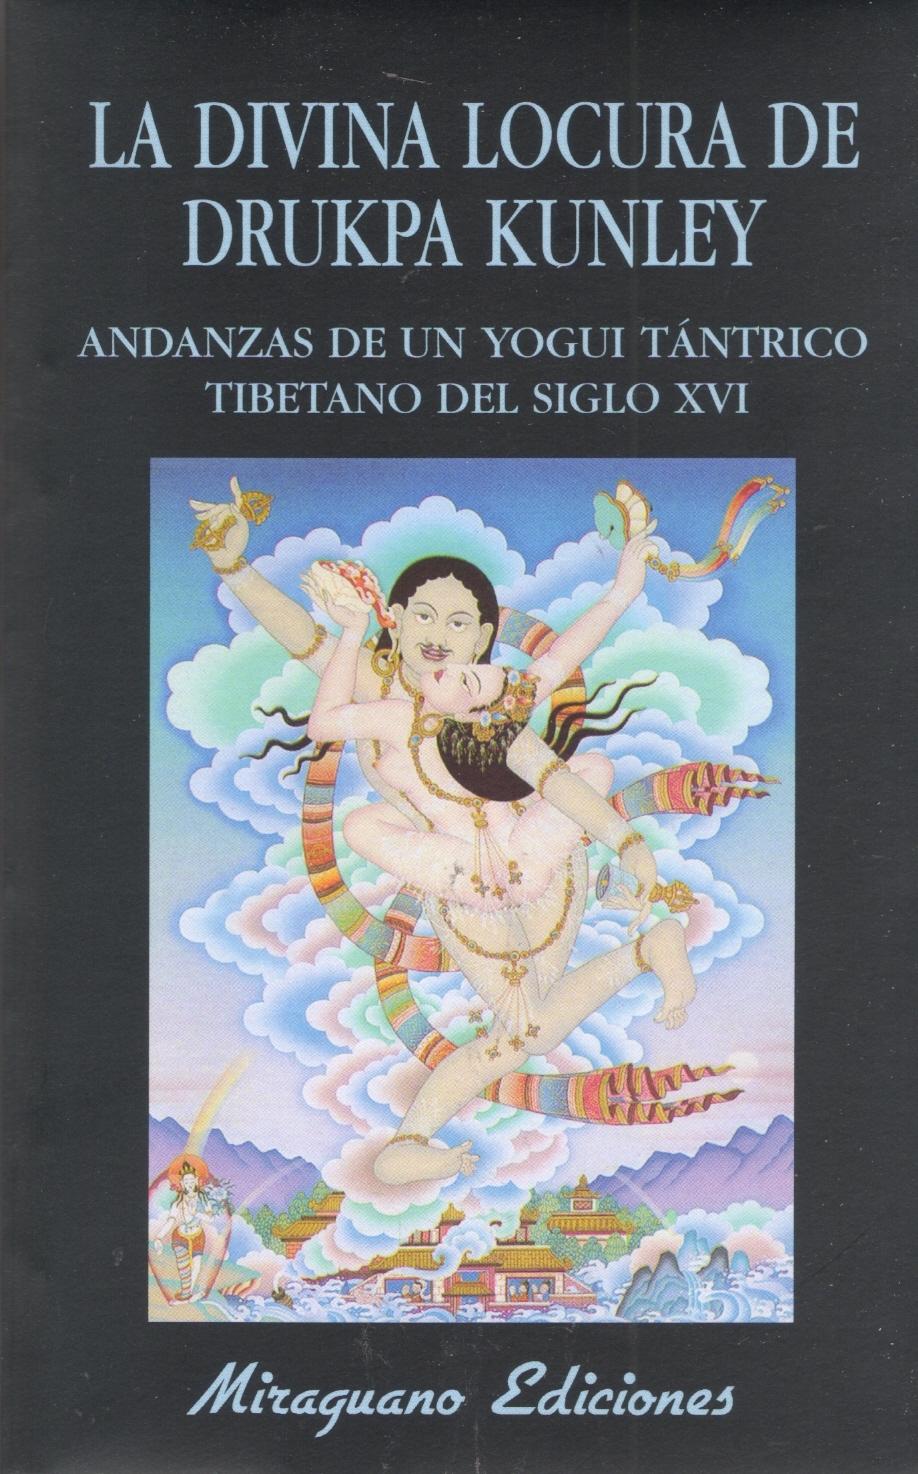 La divina locura de Drukpa Kunley "Andanzas de un yogui tántrico tibetano del siglo XVI"